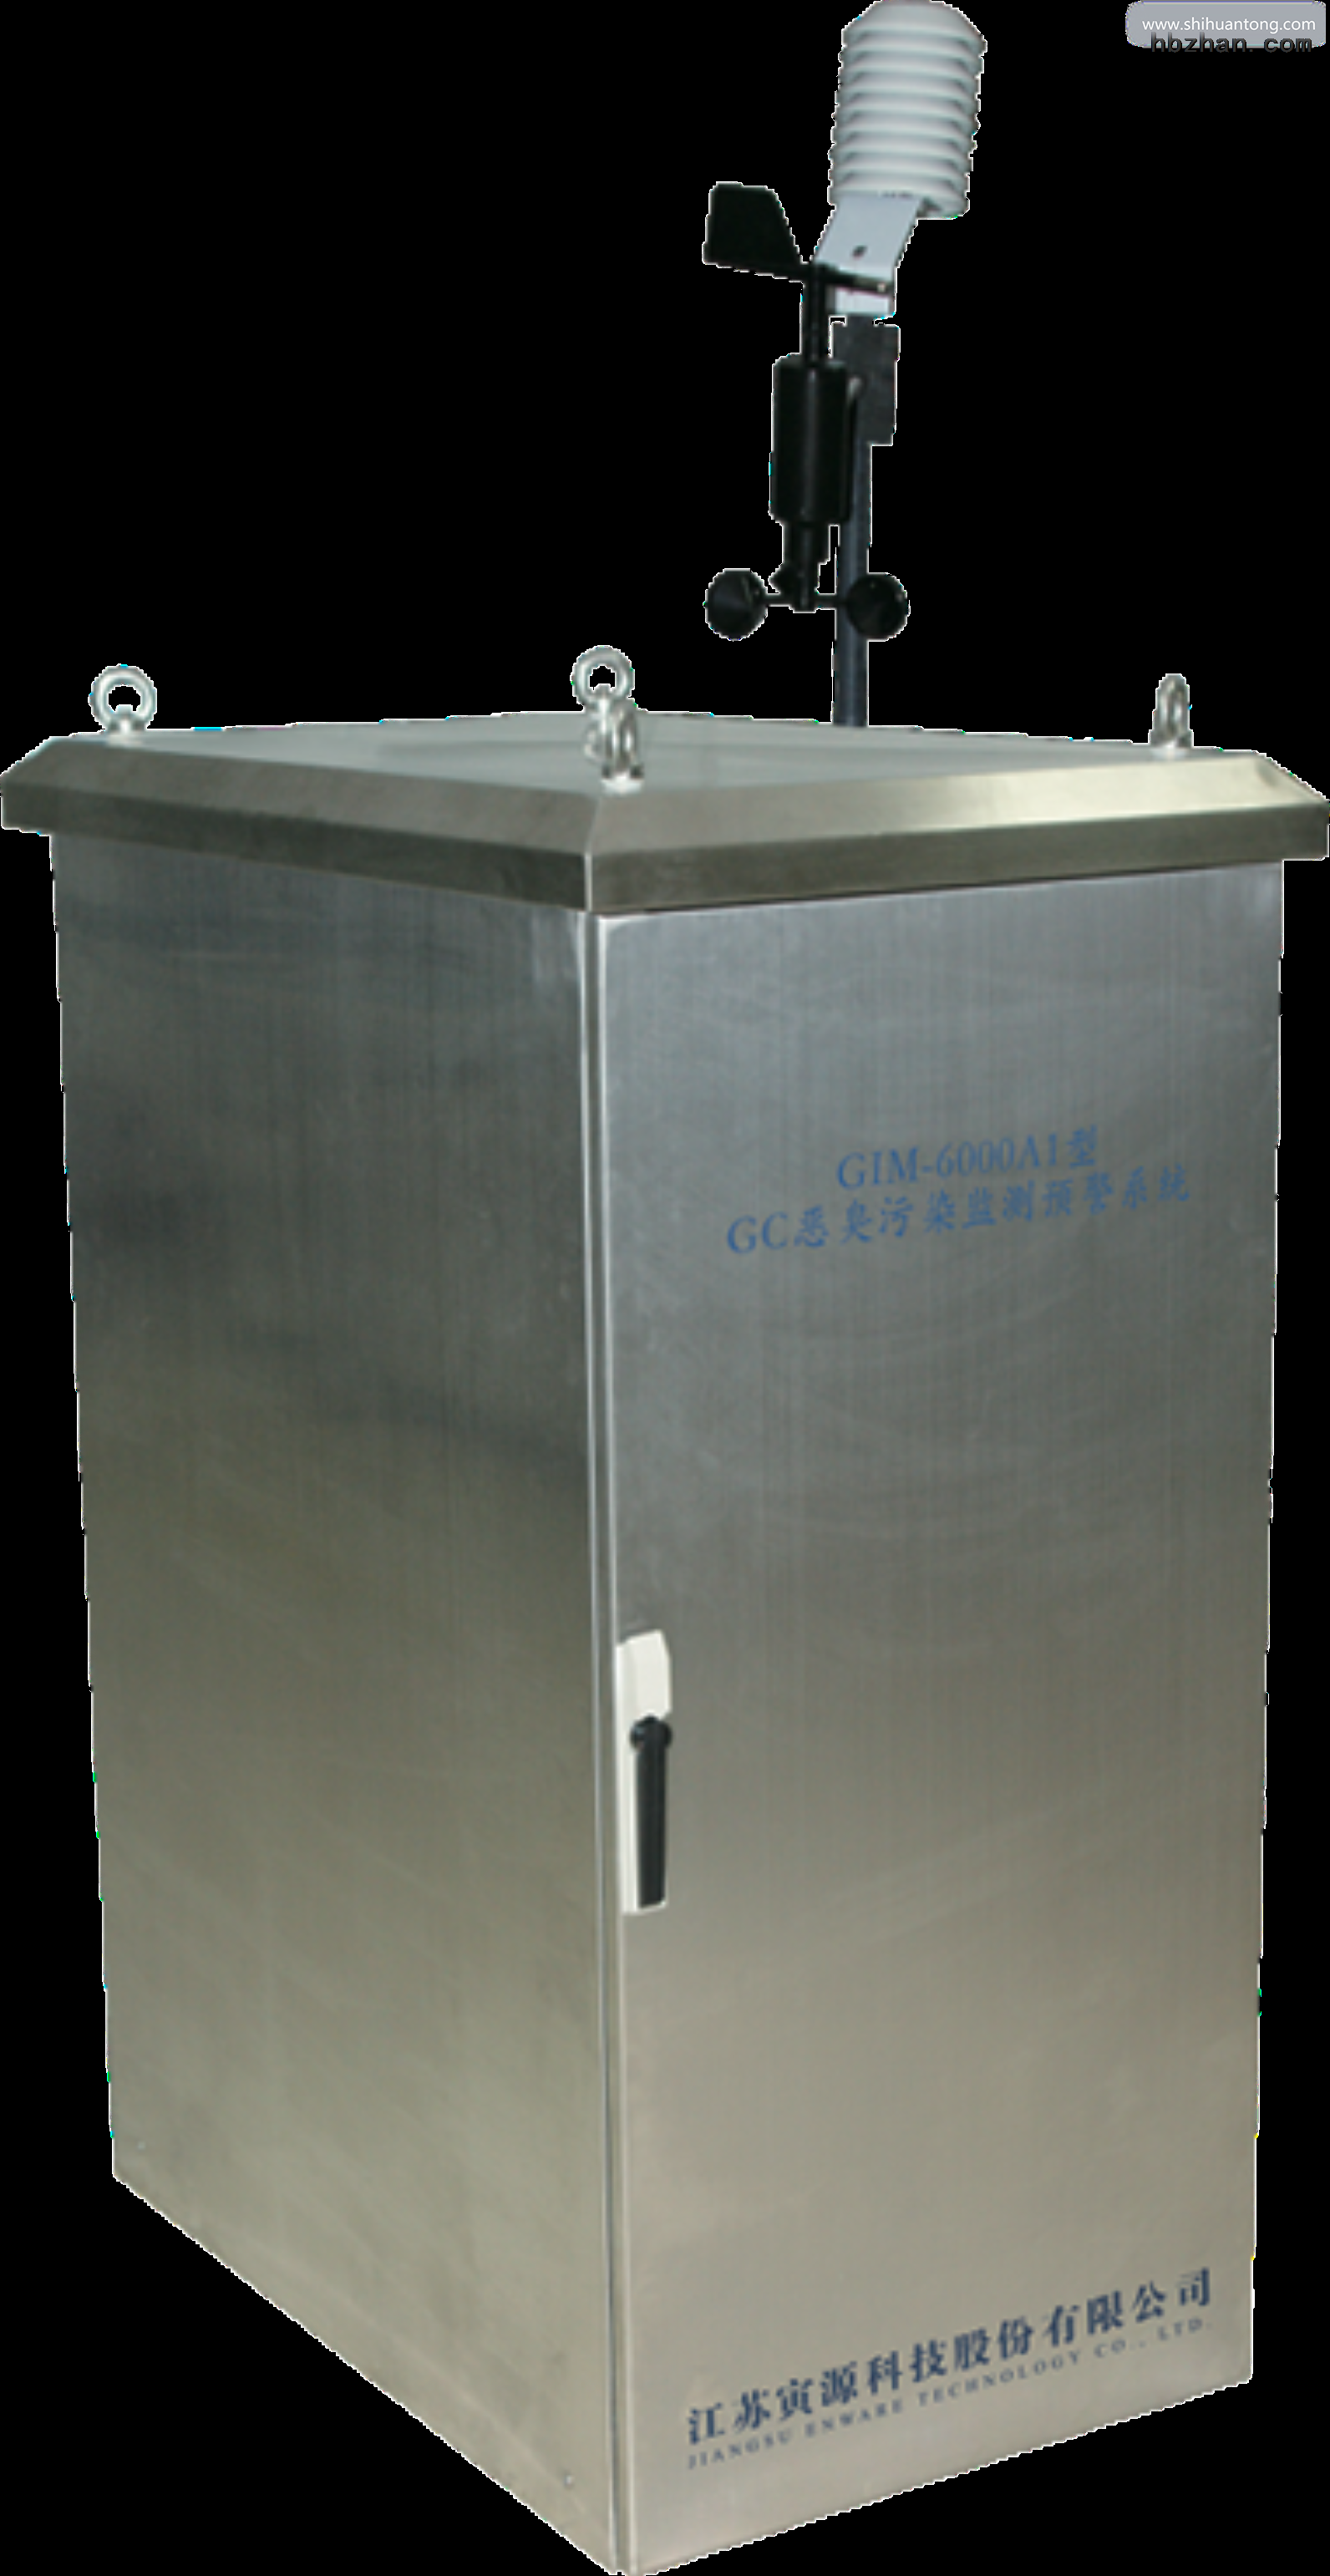 GIM-6000A1型 GC恶臭污染监测预警系统